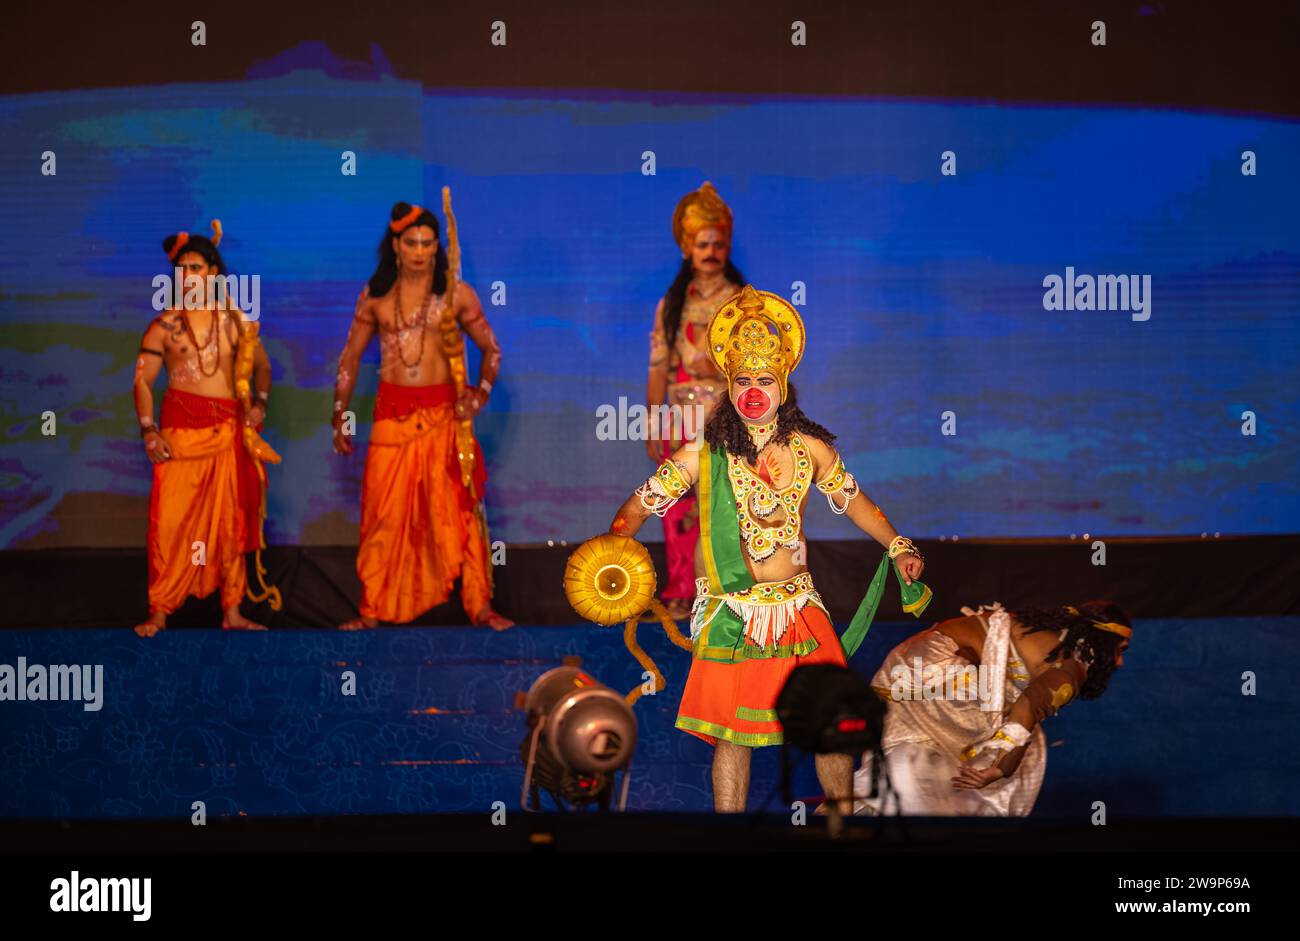 Portrait d'un artiste masculin jouant le personnage de dieu hindou bélier et laxman et d'autres personnages de ramayana en ramlila pendant le festival de dussehra. Banque D'Images